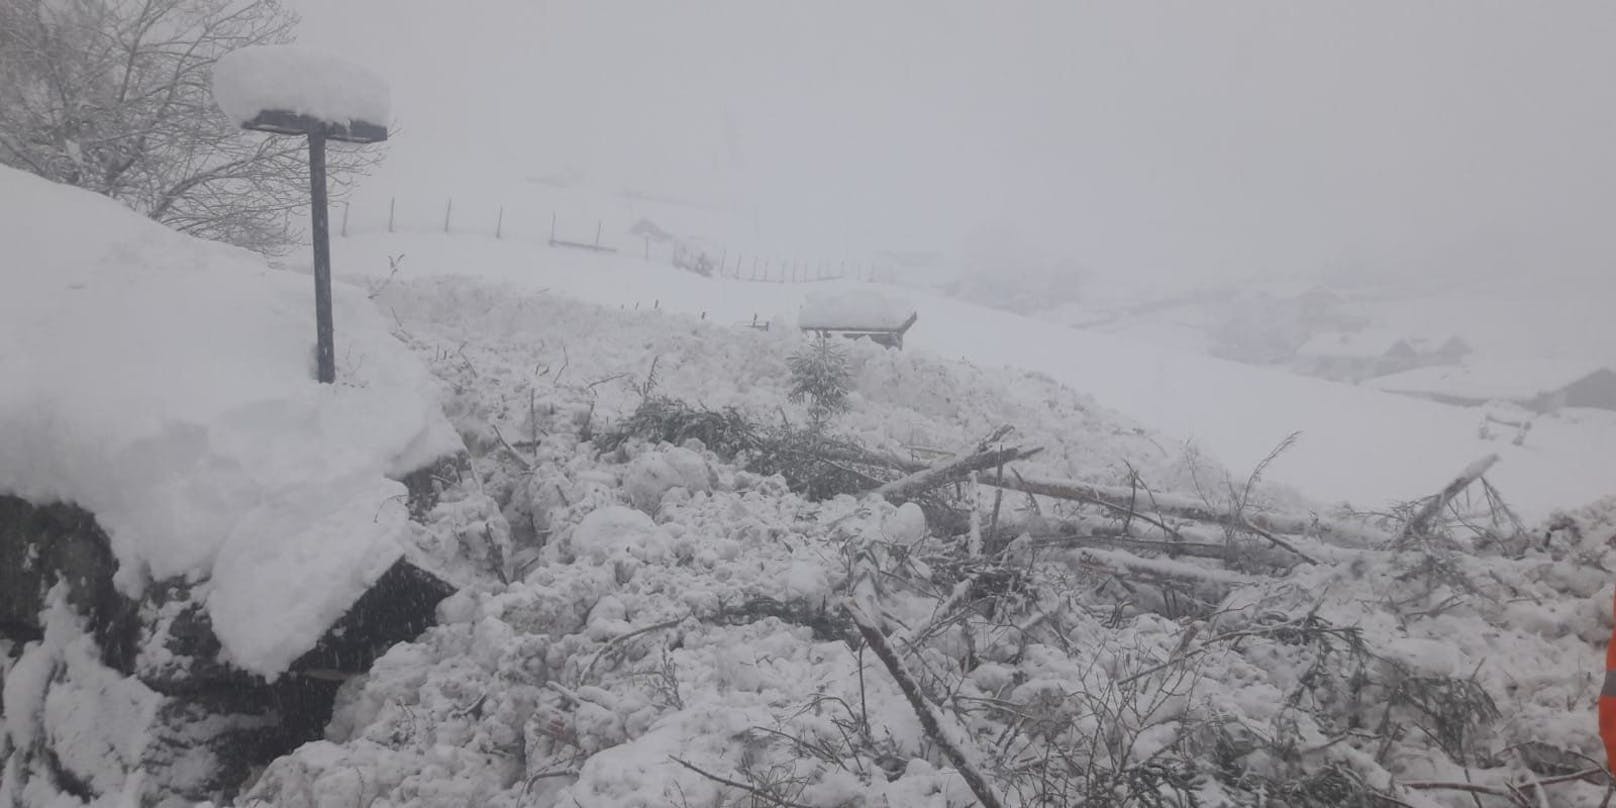 Aufgrund starker Schneefälle musste die Zufahrt zum Lesachtal in Kärnten gesperrt werden. (Symbolbild)